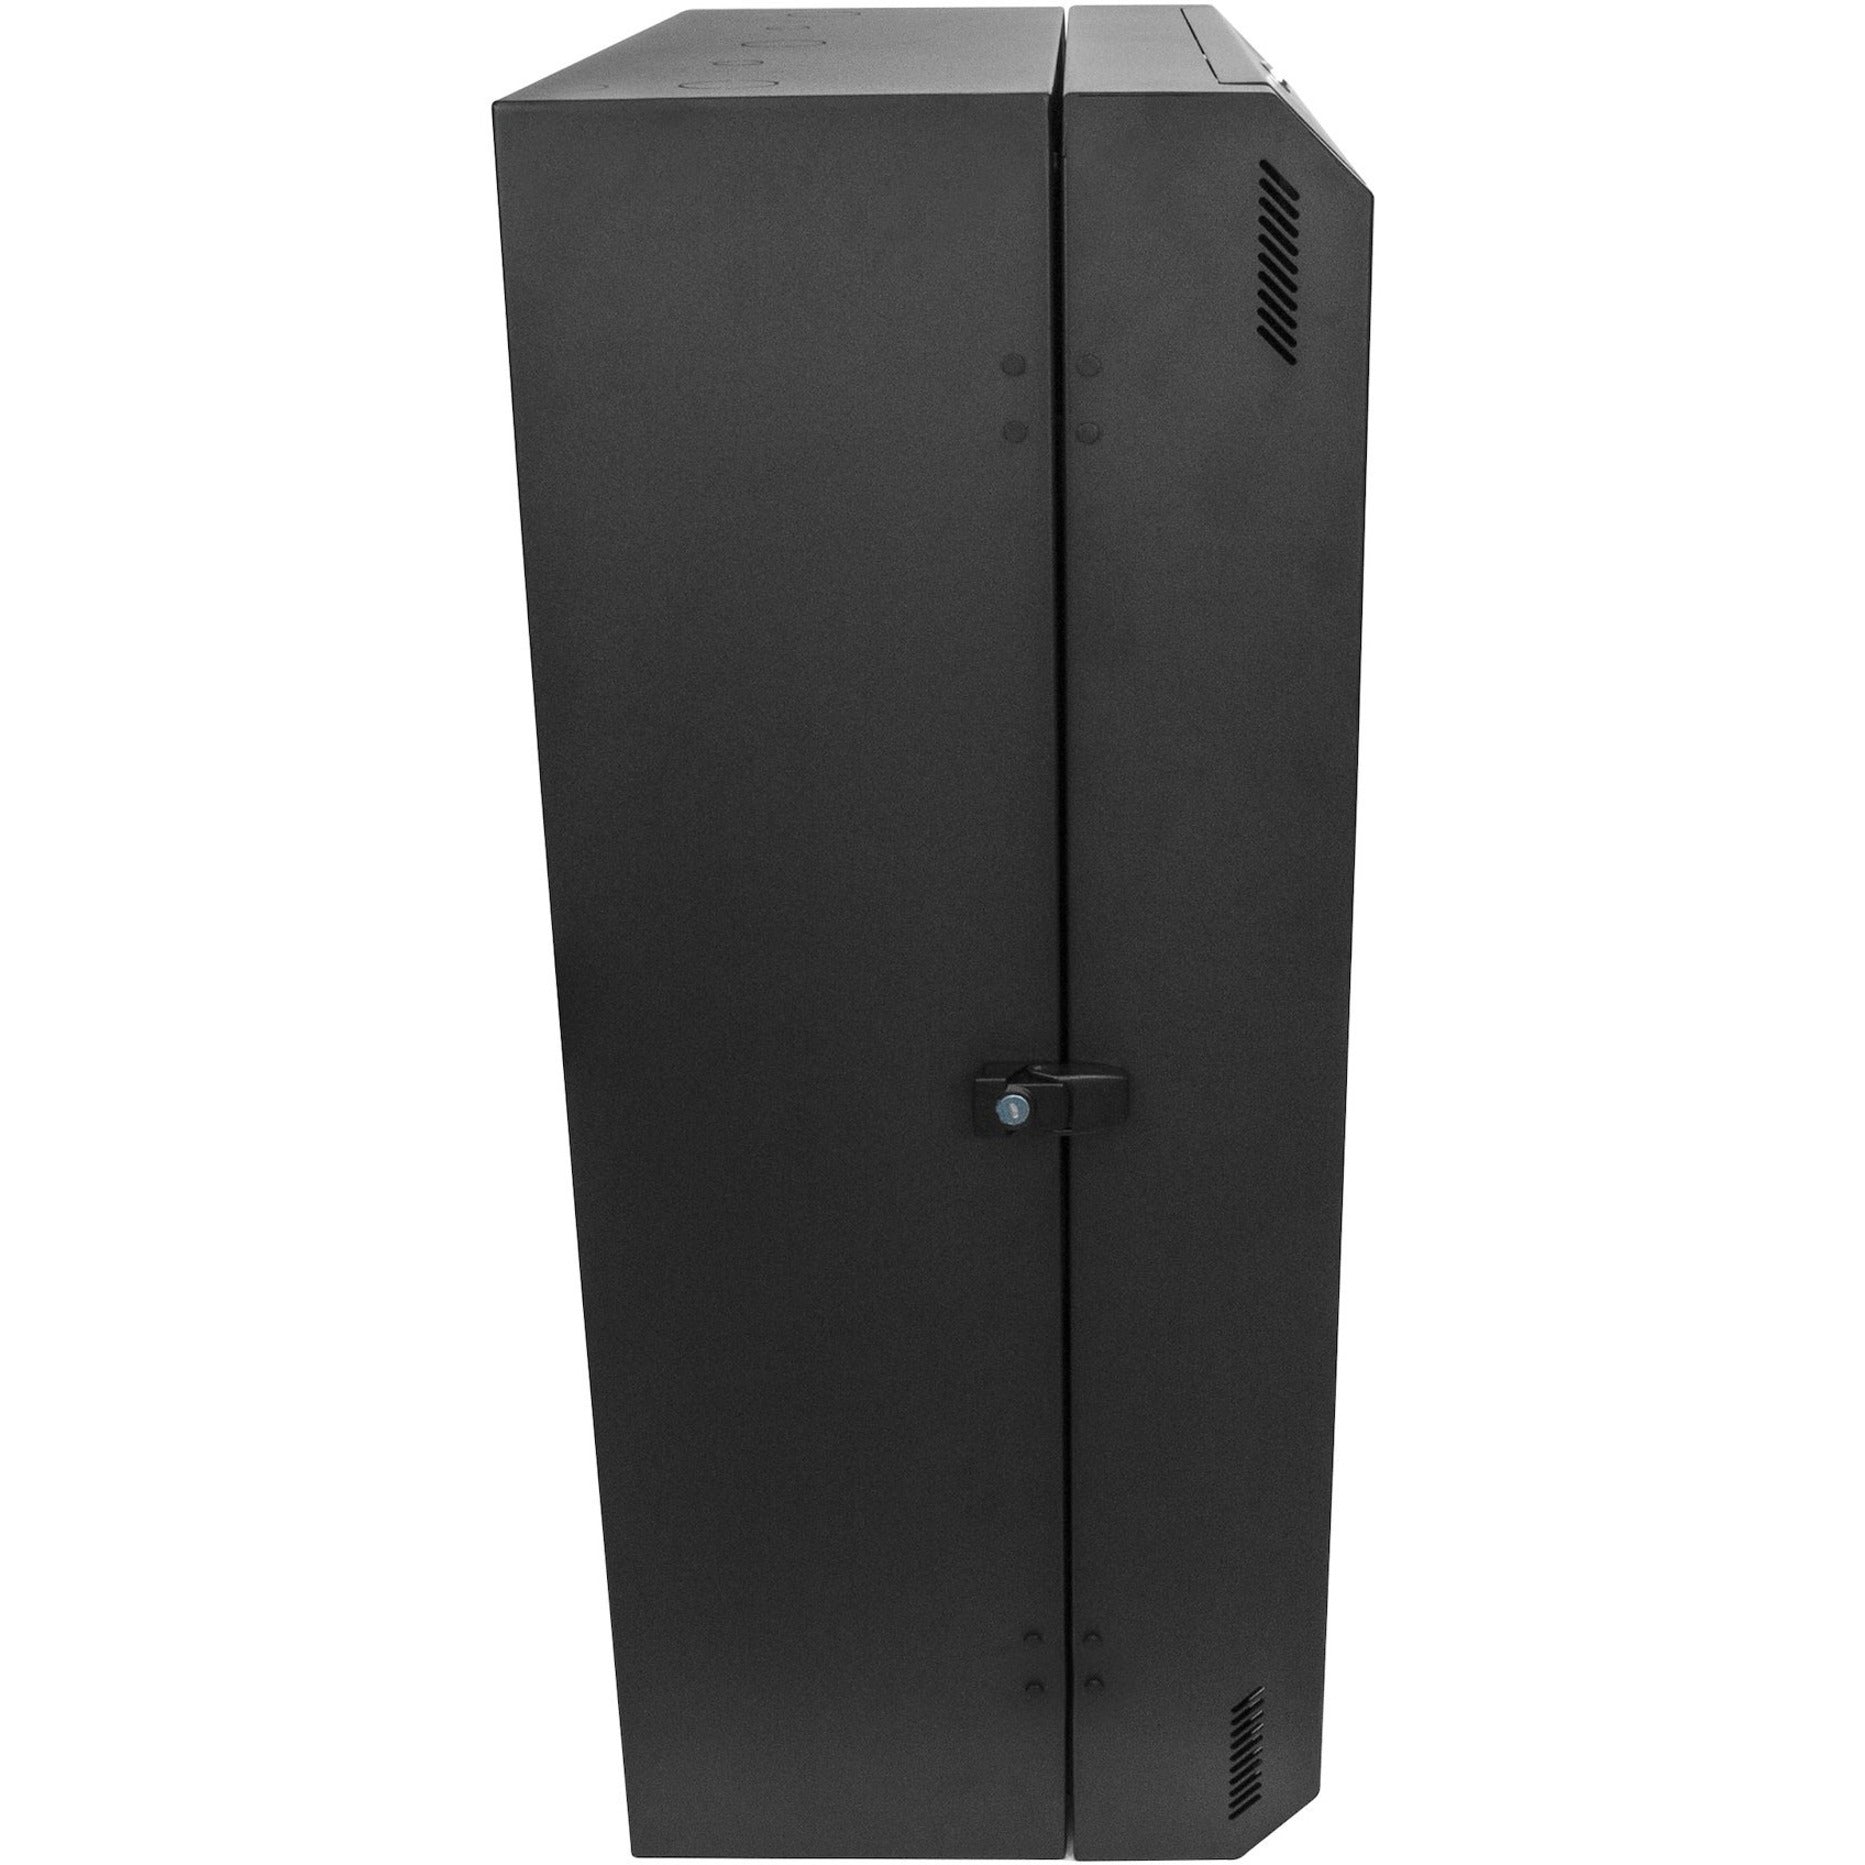 StarTech.com RK830WALVS 8U Vertical Server Cabinet - Wall Mount Network Cabinet, 30 in. Depth, 5-Year Warranty